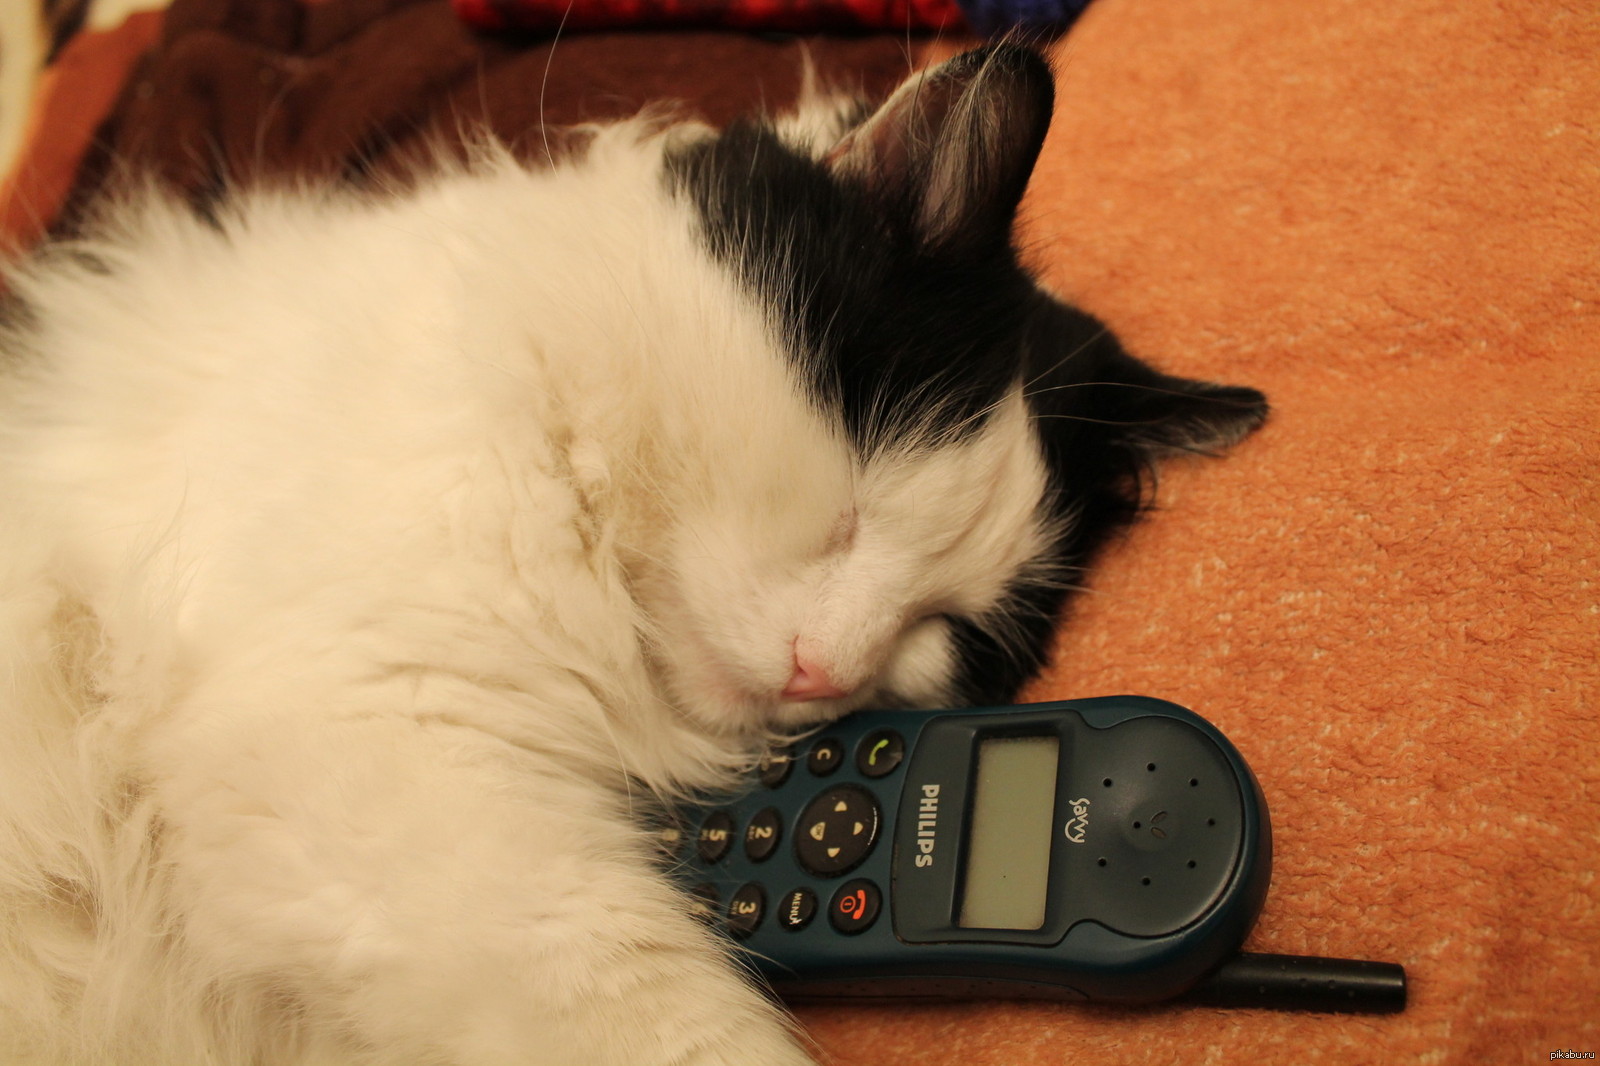 Неведомые дали жду звоночка. Кот ждет звонка. Котик ждет звонка. Котик ждет у телефона. Котик с телефоном ждет звонка.